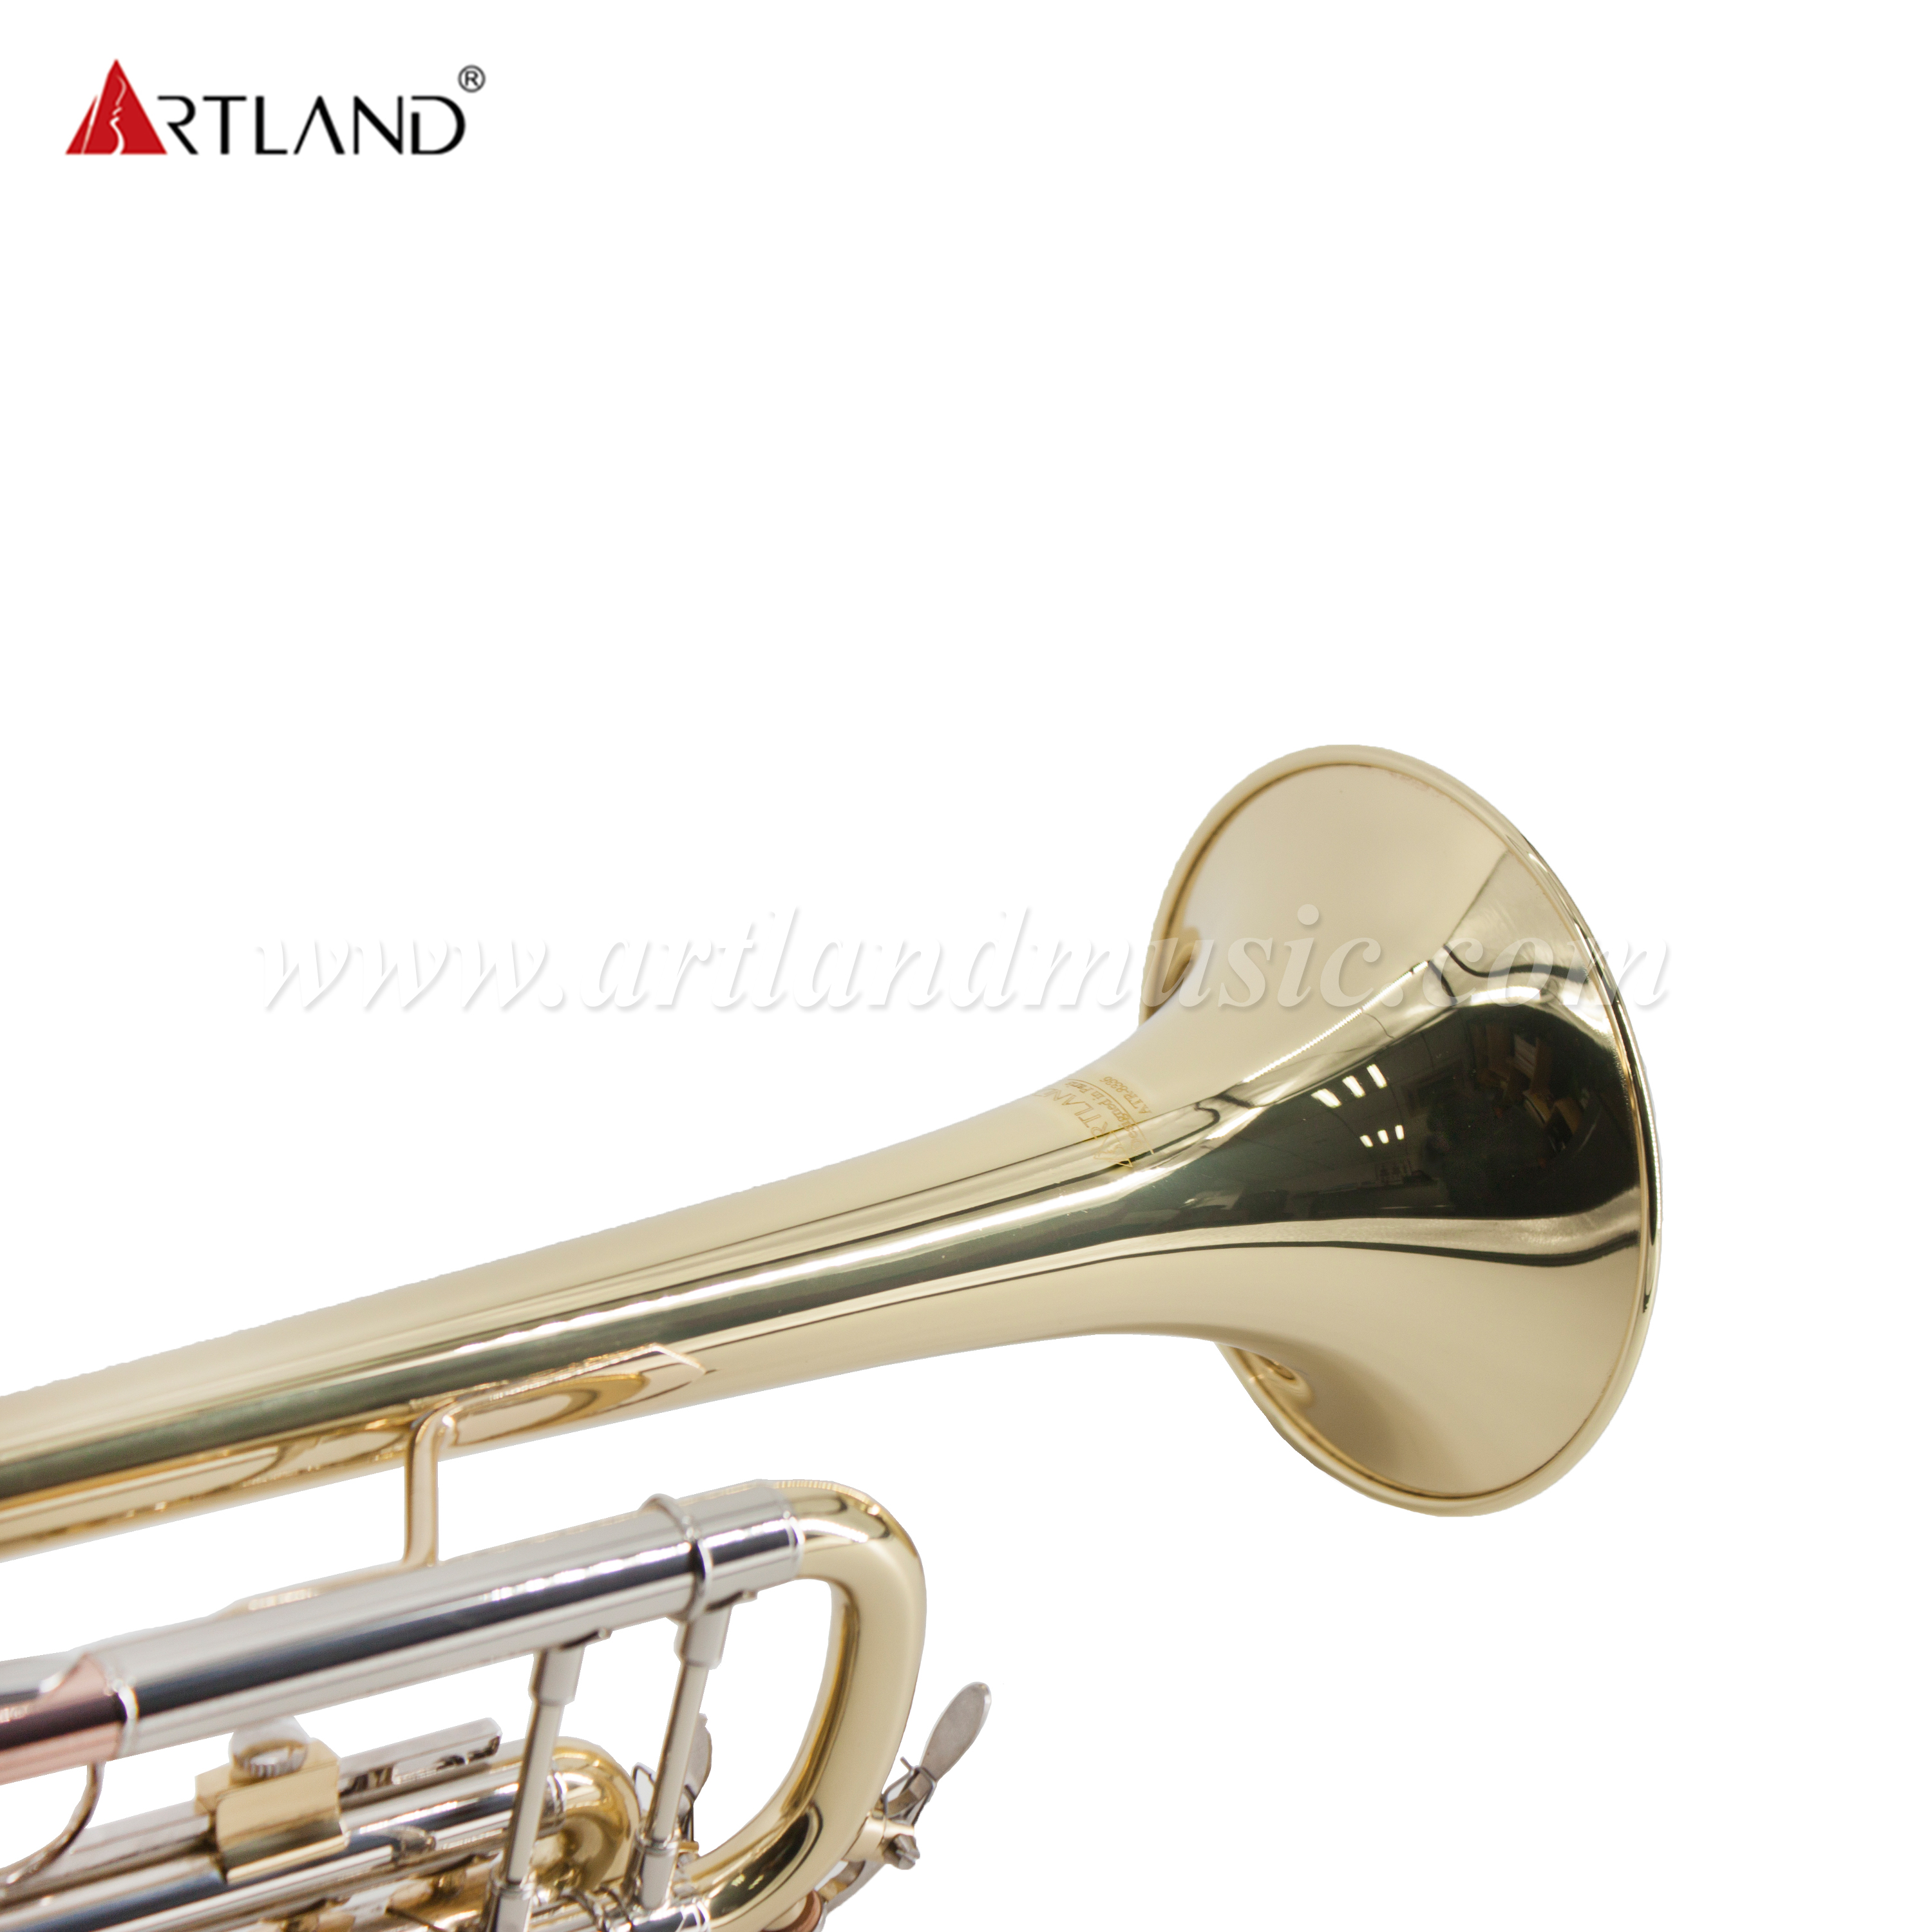 Instrumento de latón profesional Trompeta de latón amarillo macizo con estuche (ATR8336)